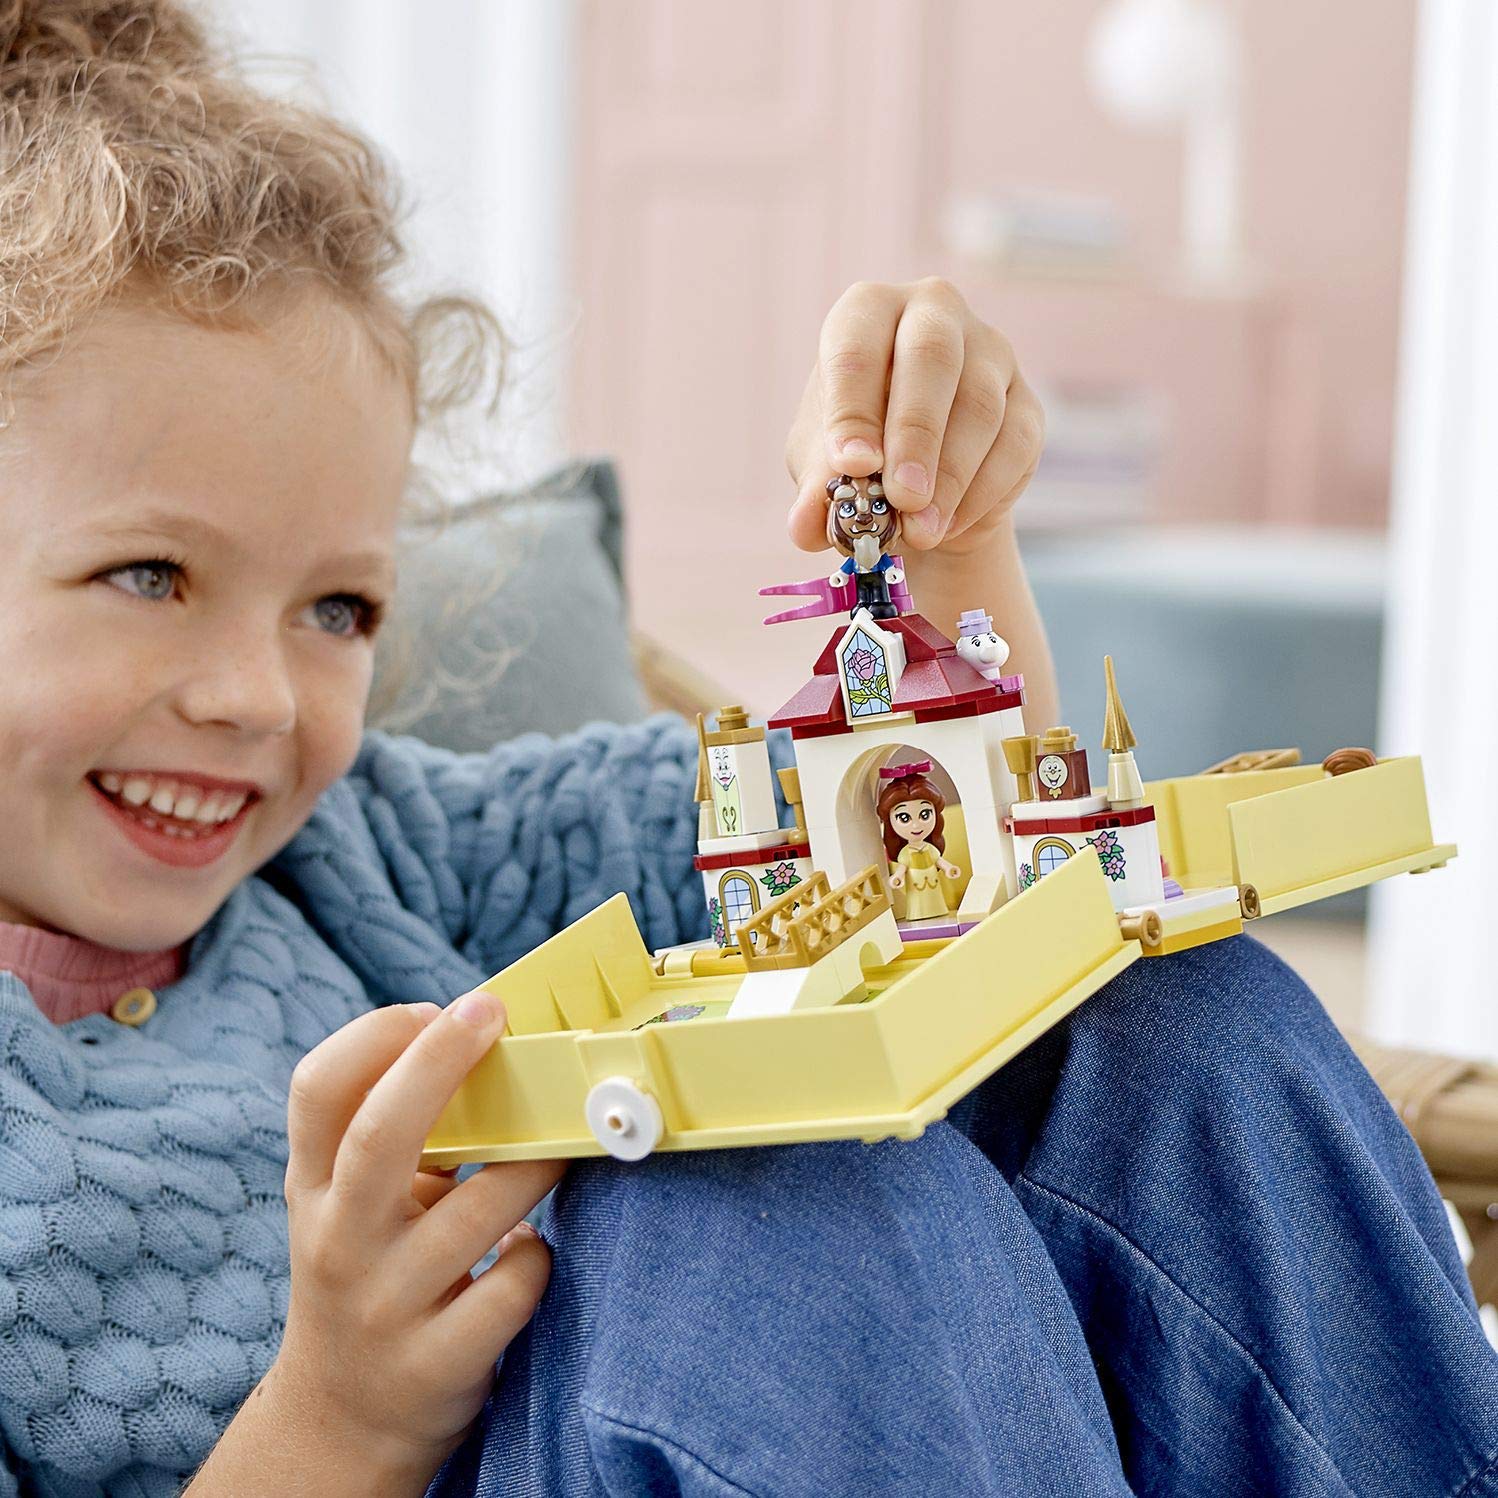 Конструктор Lego Disney Princess - Книга сказочных приключений Белль  